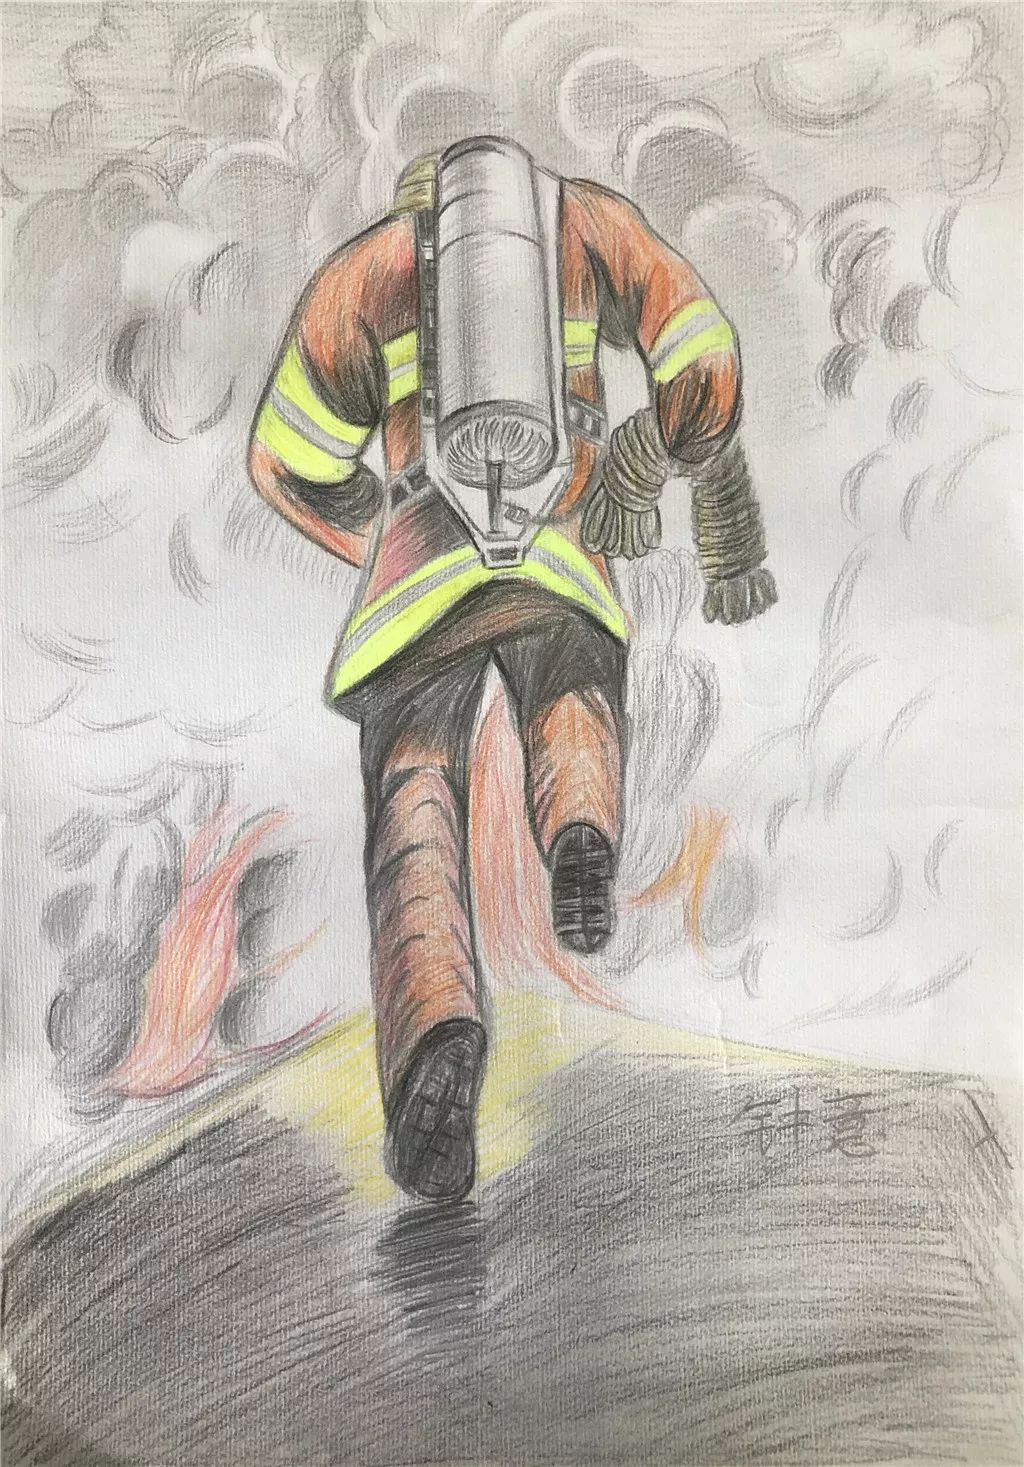 【投票】锦州消防【我是小小消防员】消防绘画竞赛展播第三弹!